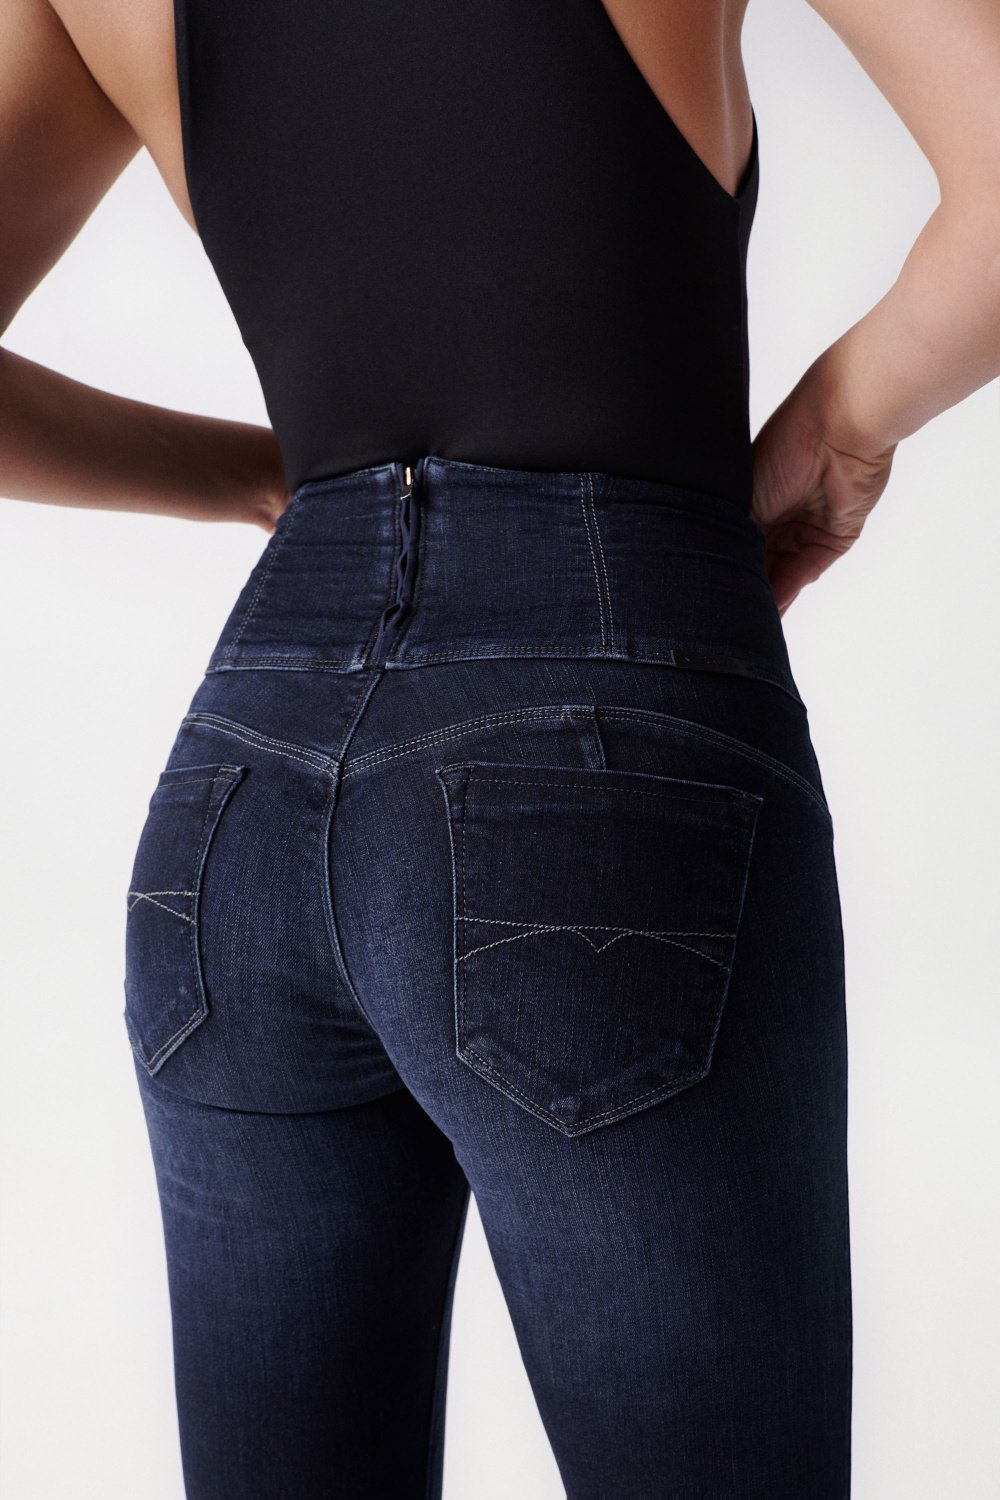 jeans levis online